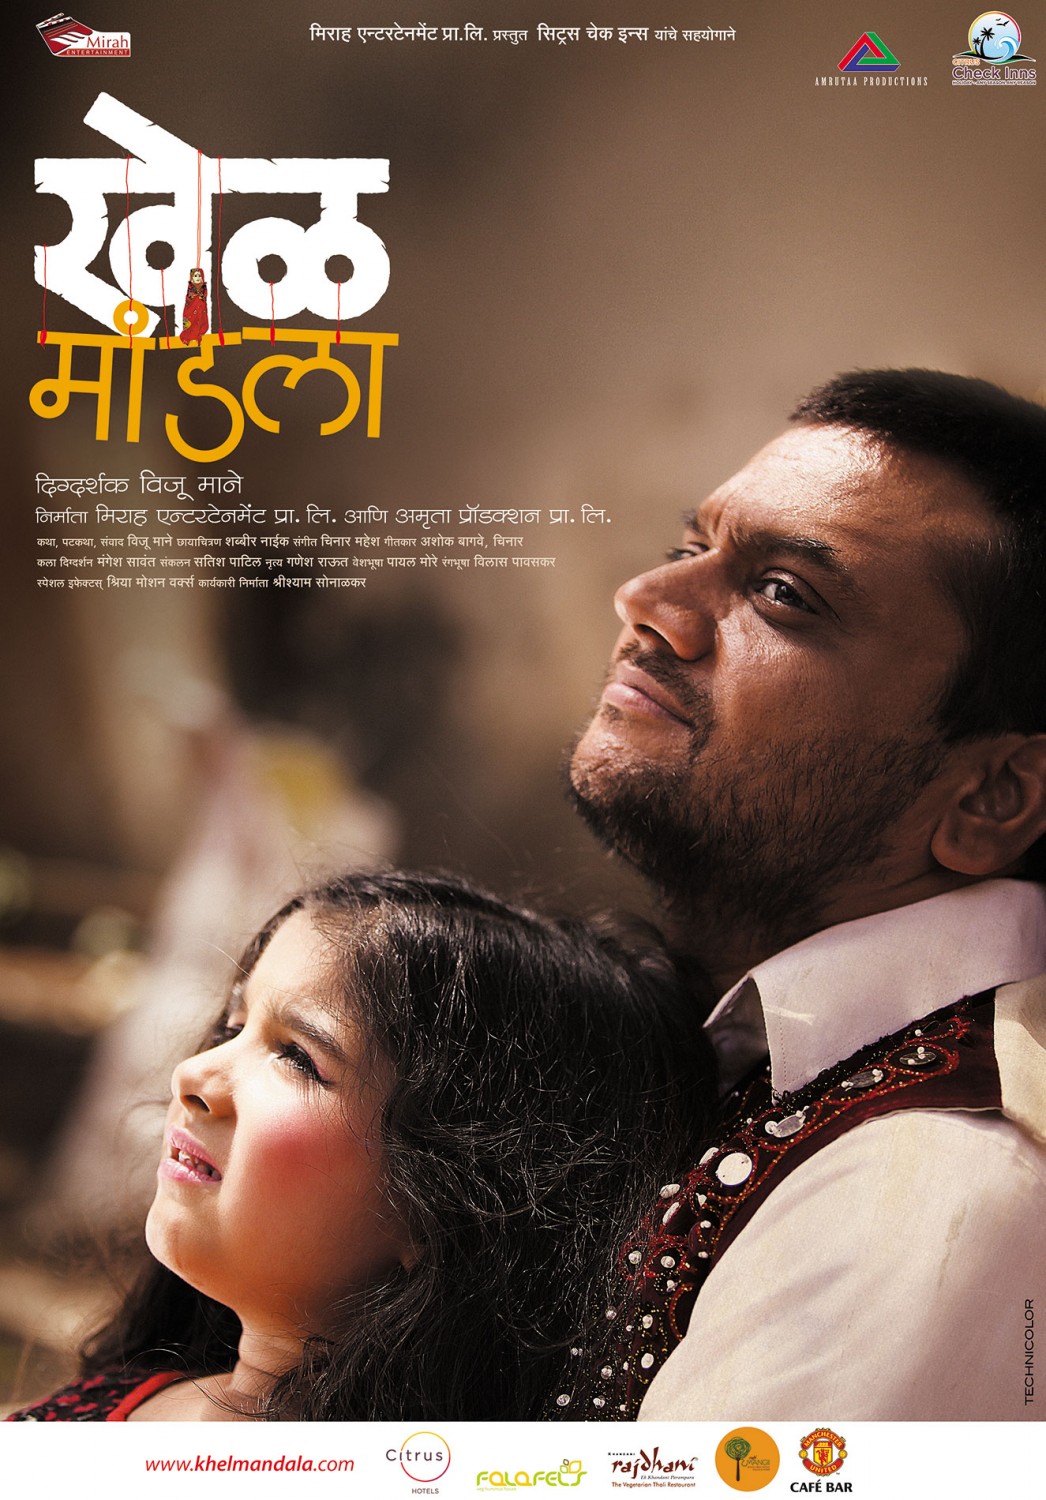 Extra Large Movie Poster Image for Khel Mandala (#11 of 13)